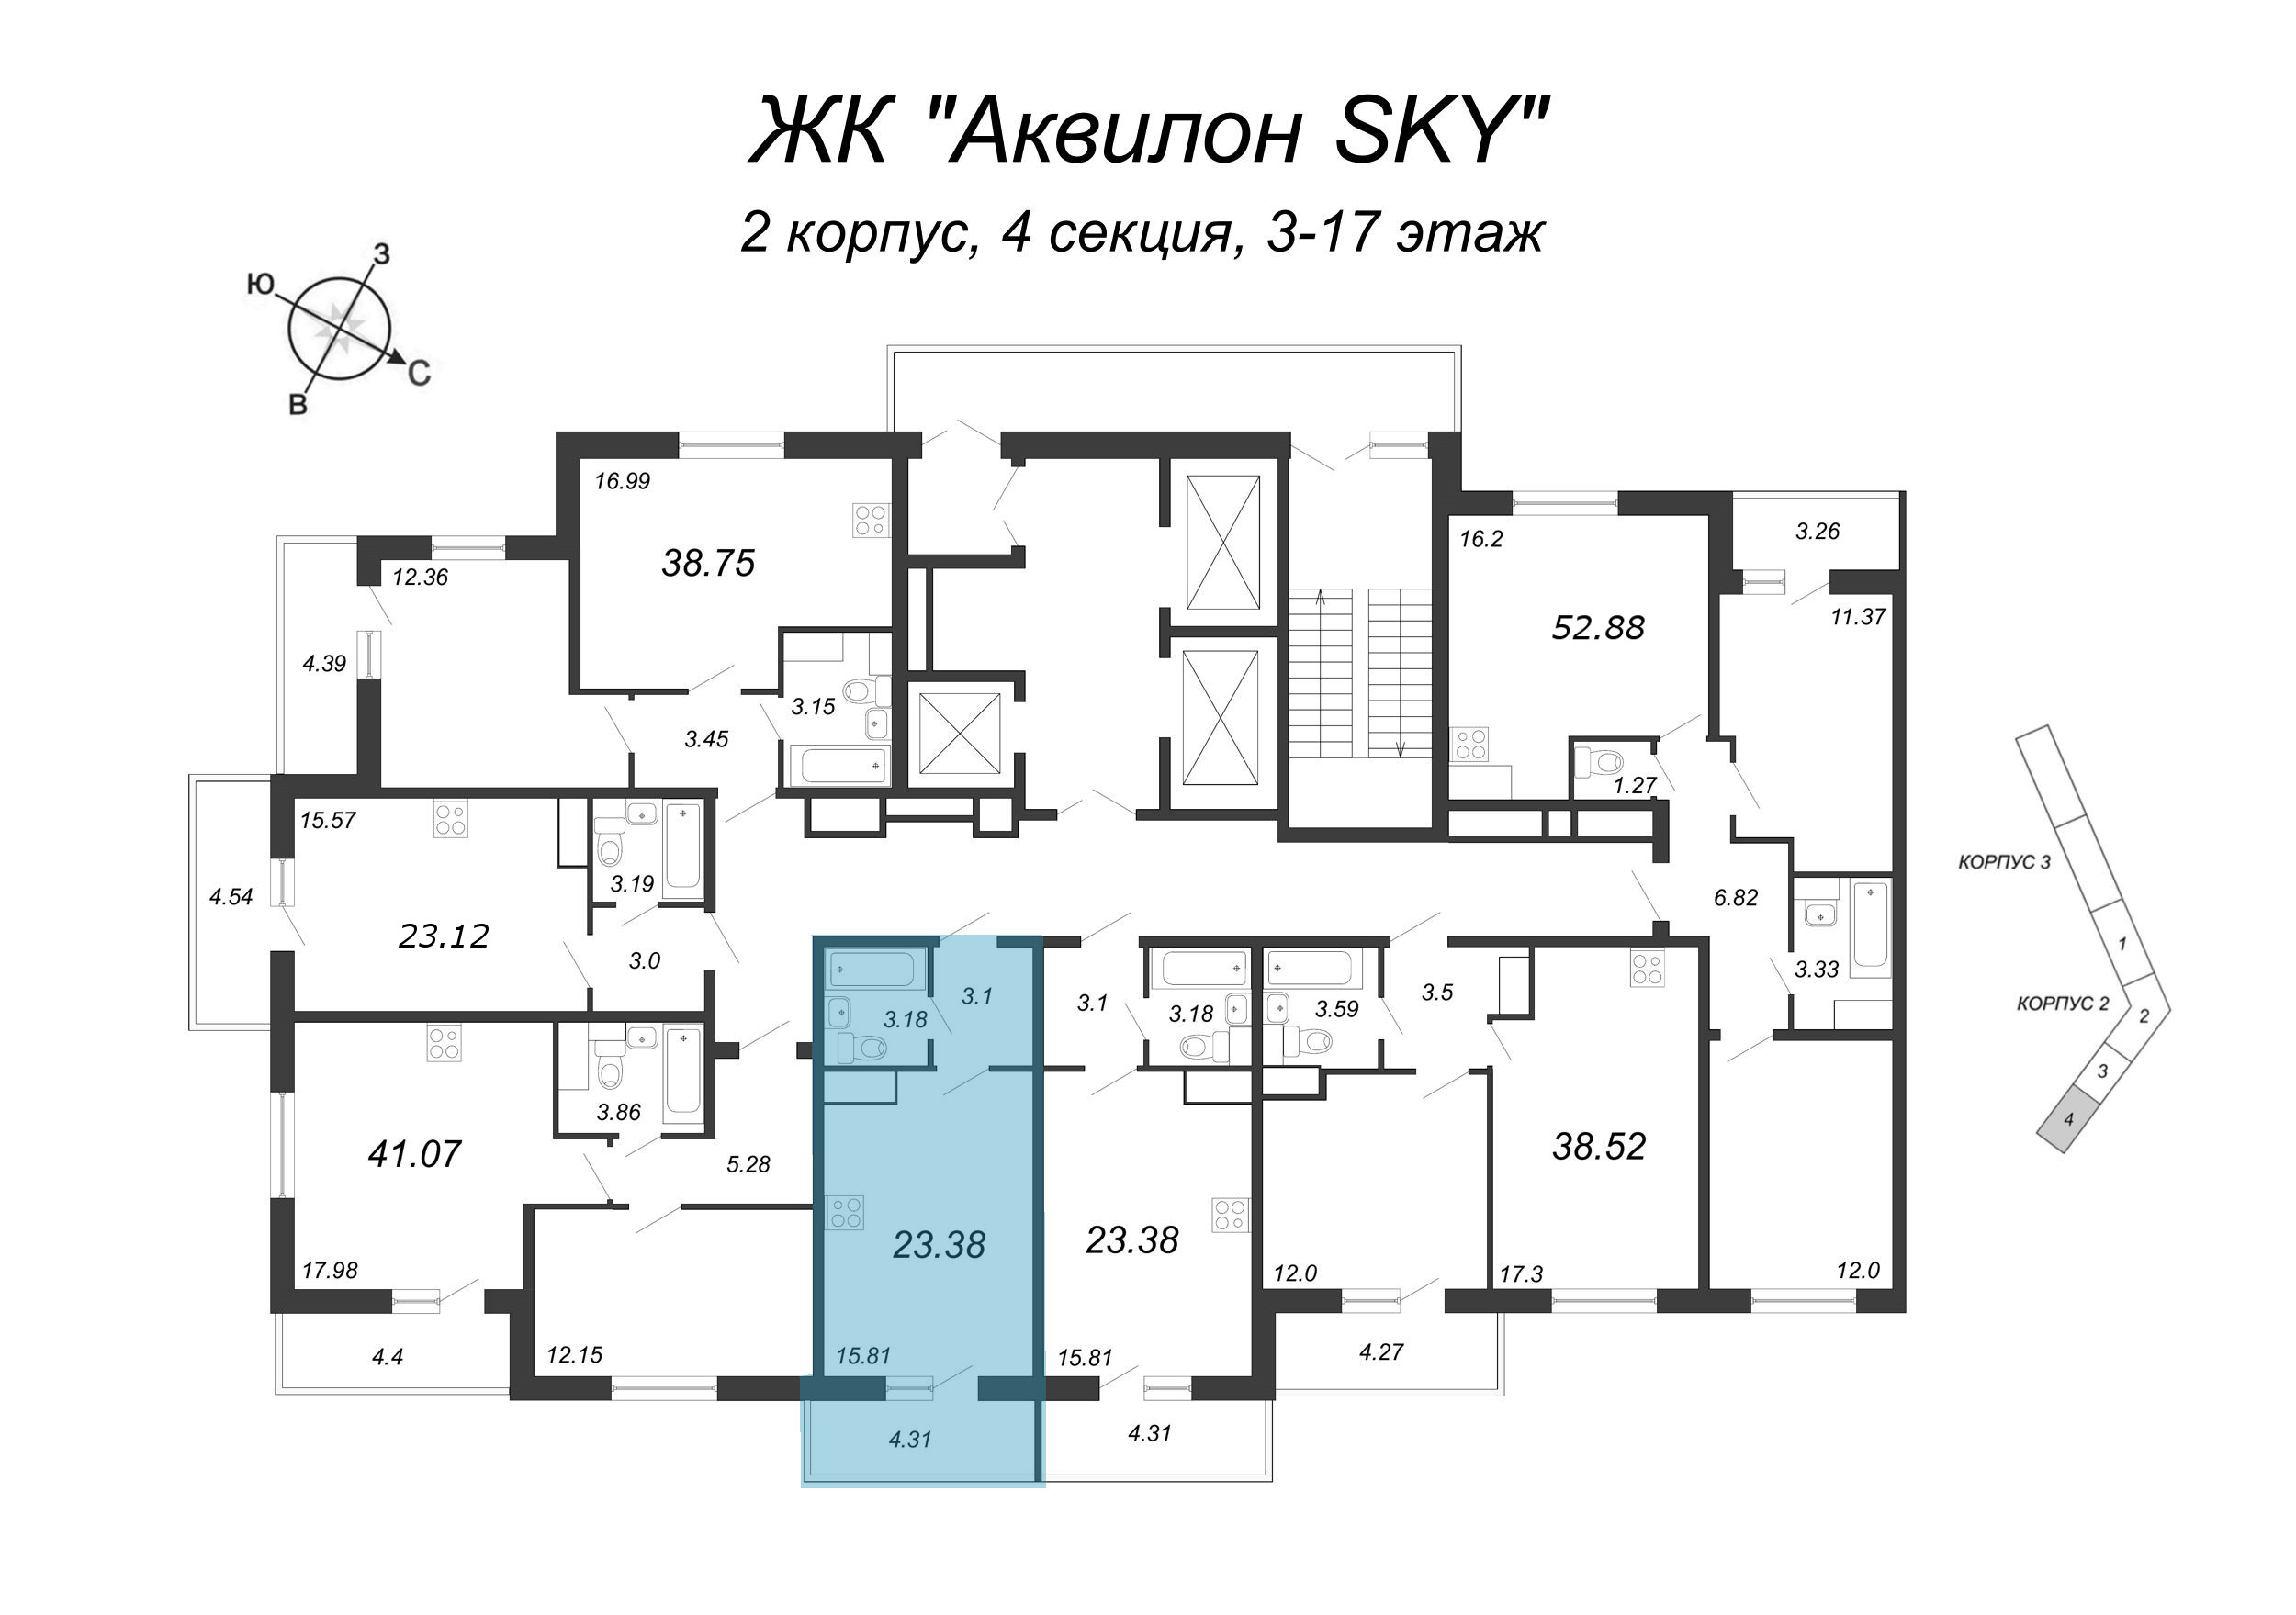 Квартира-студия, 23.4 м² в ЖК "Аквилон SKY" - планировка этажа